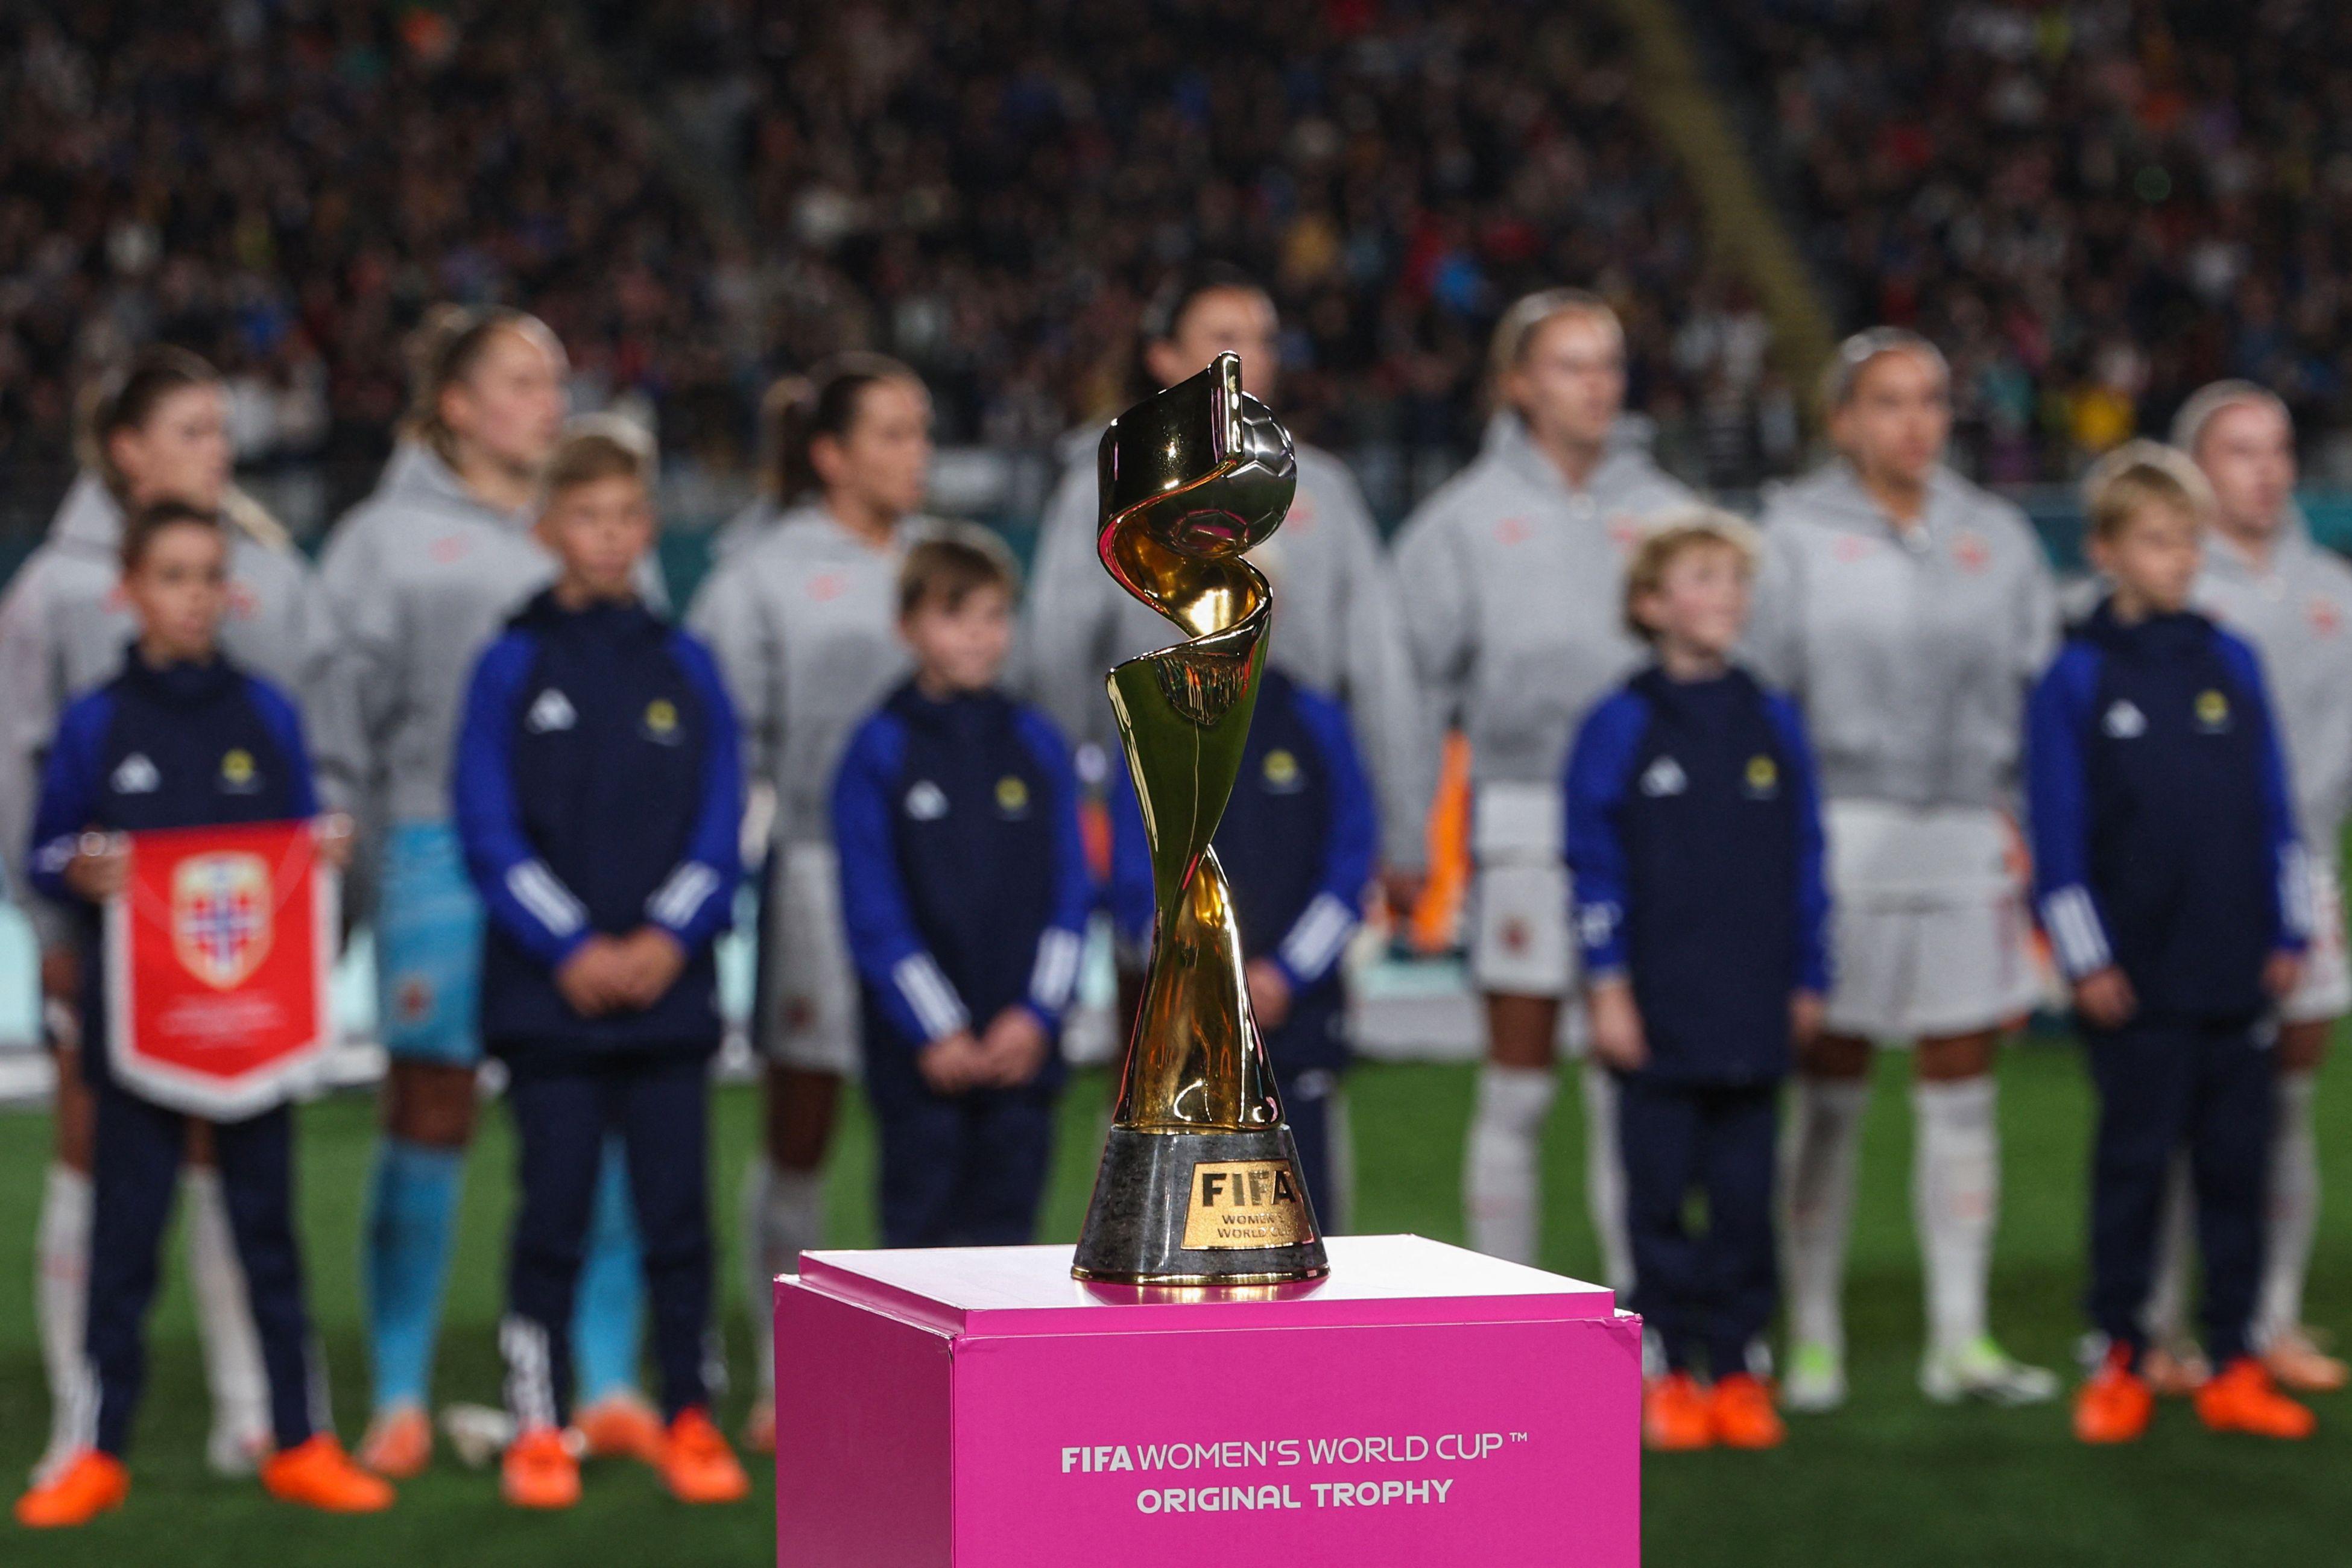 Oitavas de final da Copa Feminina estão definidas; veja duelos, onde  assistir, datas e horários